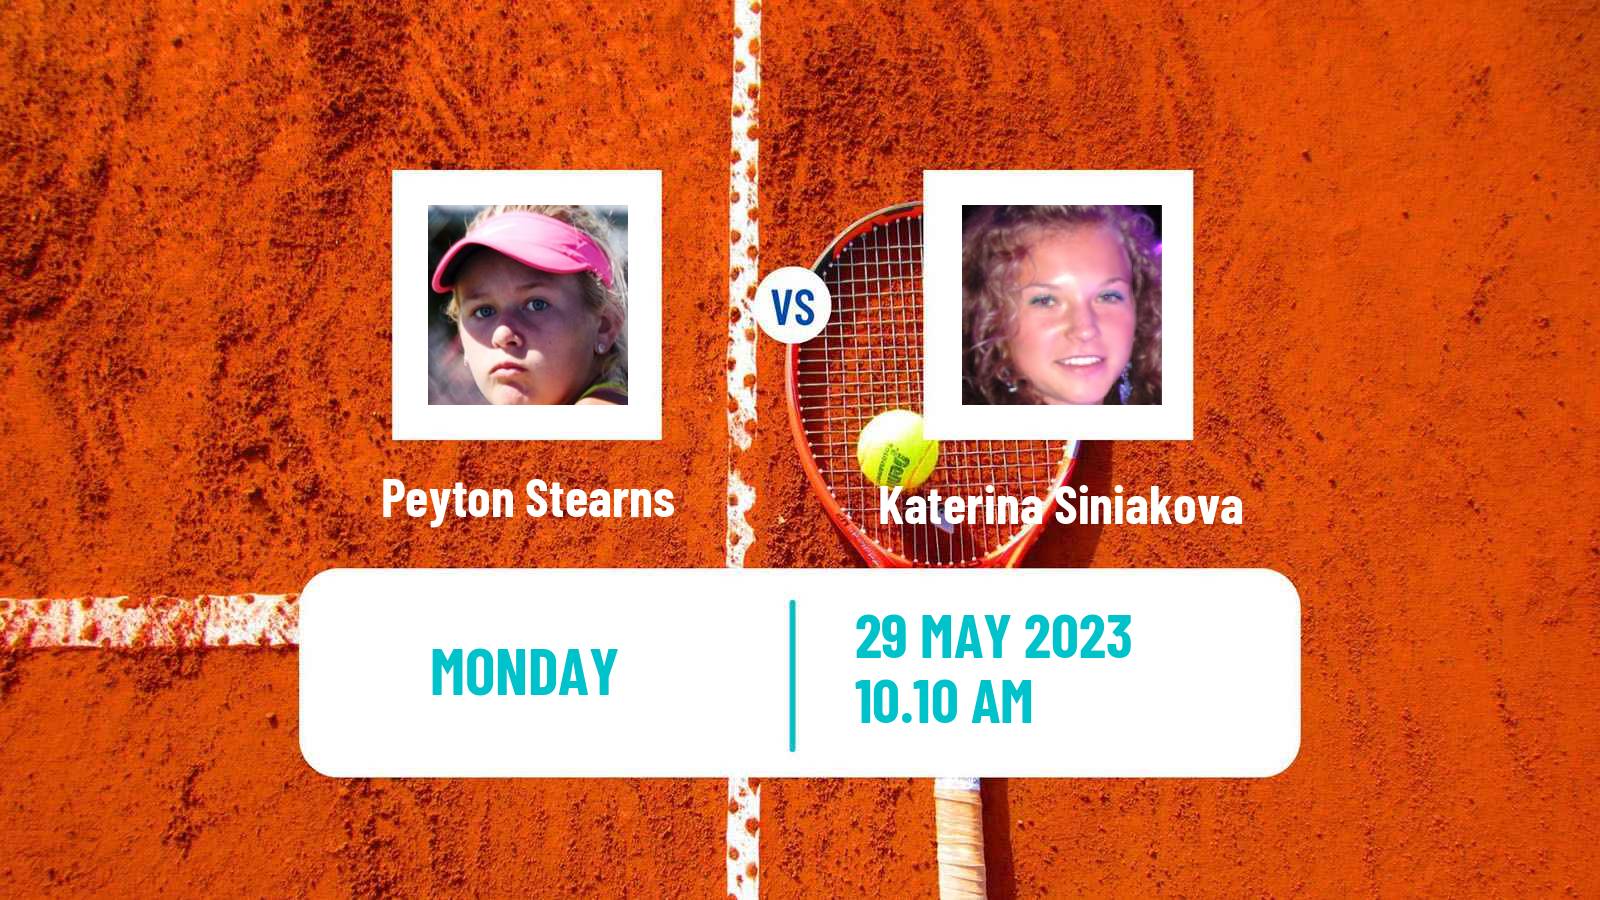 Tennis WTA Roland Garros Peyton Stearns - Katerina Siniakova